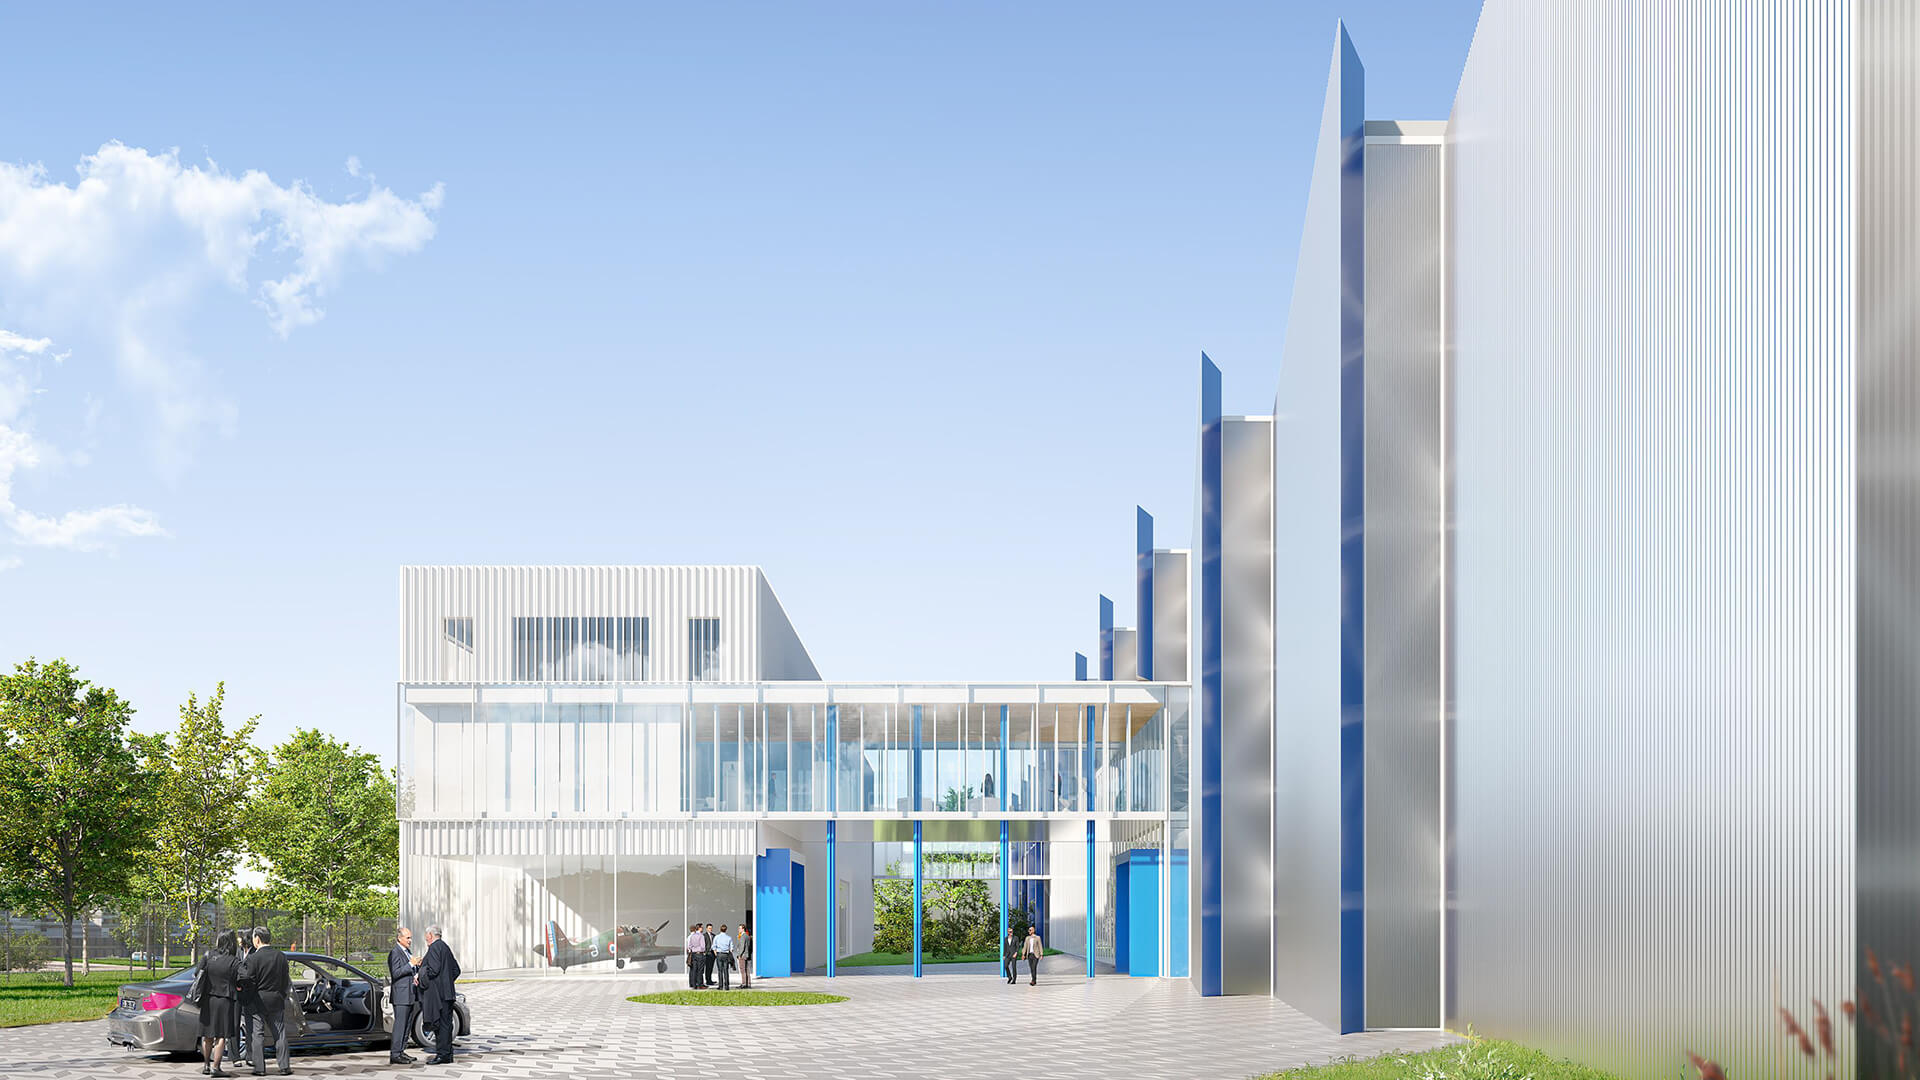 Rendu architectural d'un bâtiment moderne avec façade en verre et éléments structuraux bleus sous un ciel nuageux